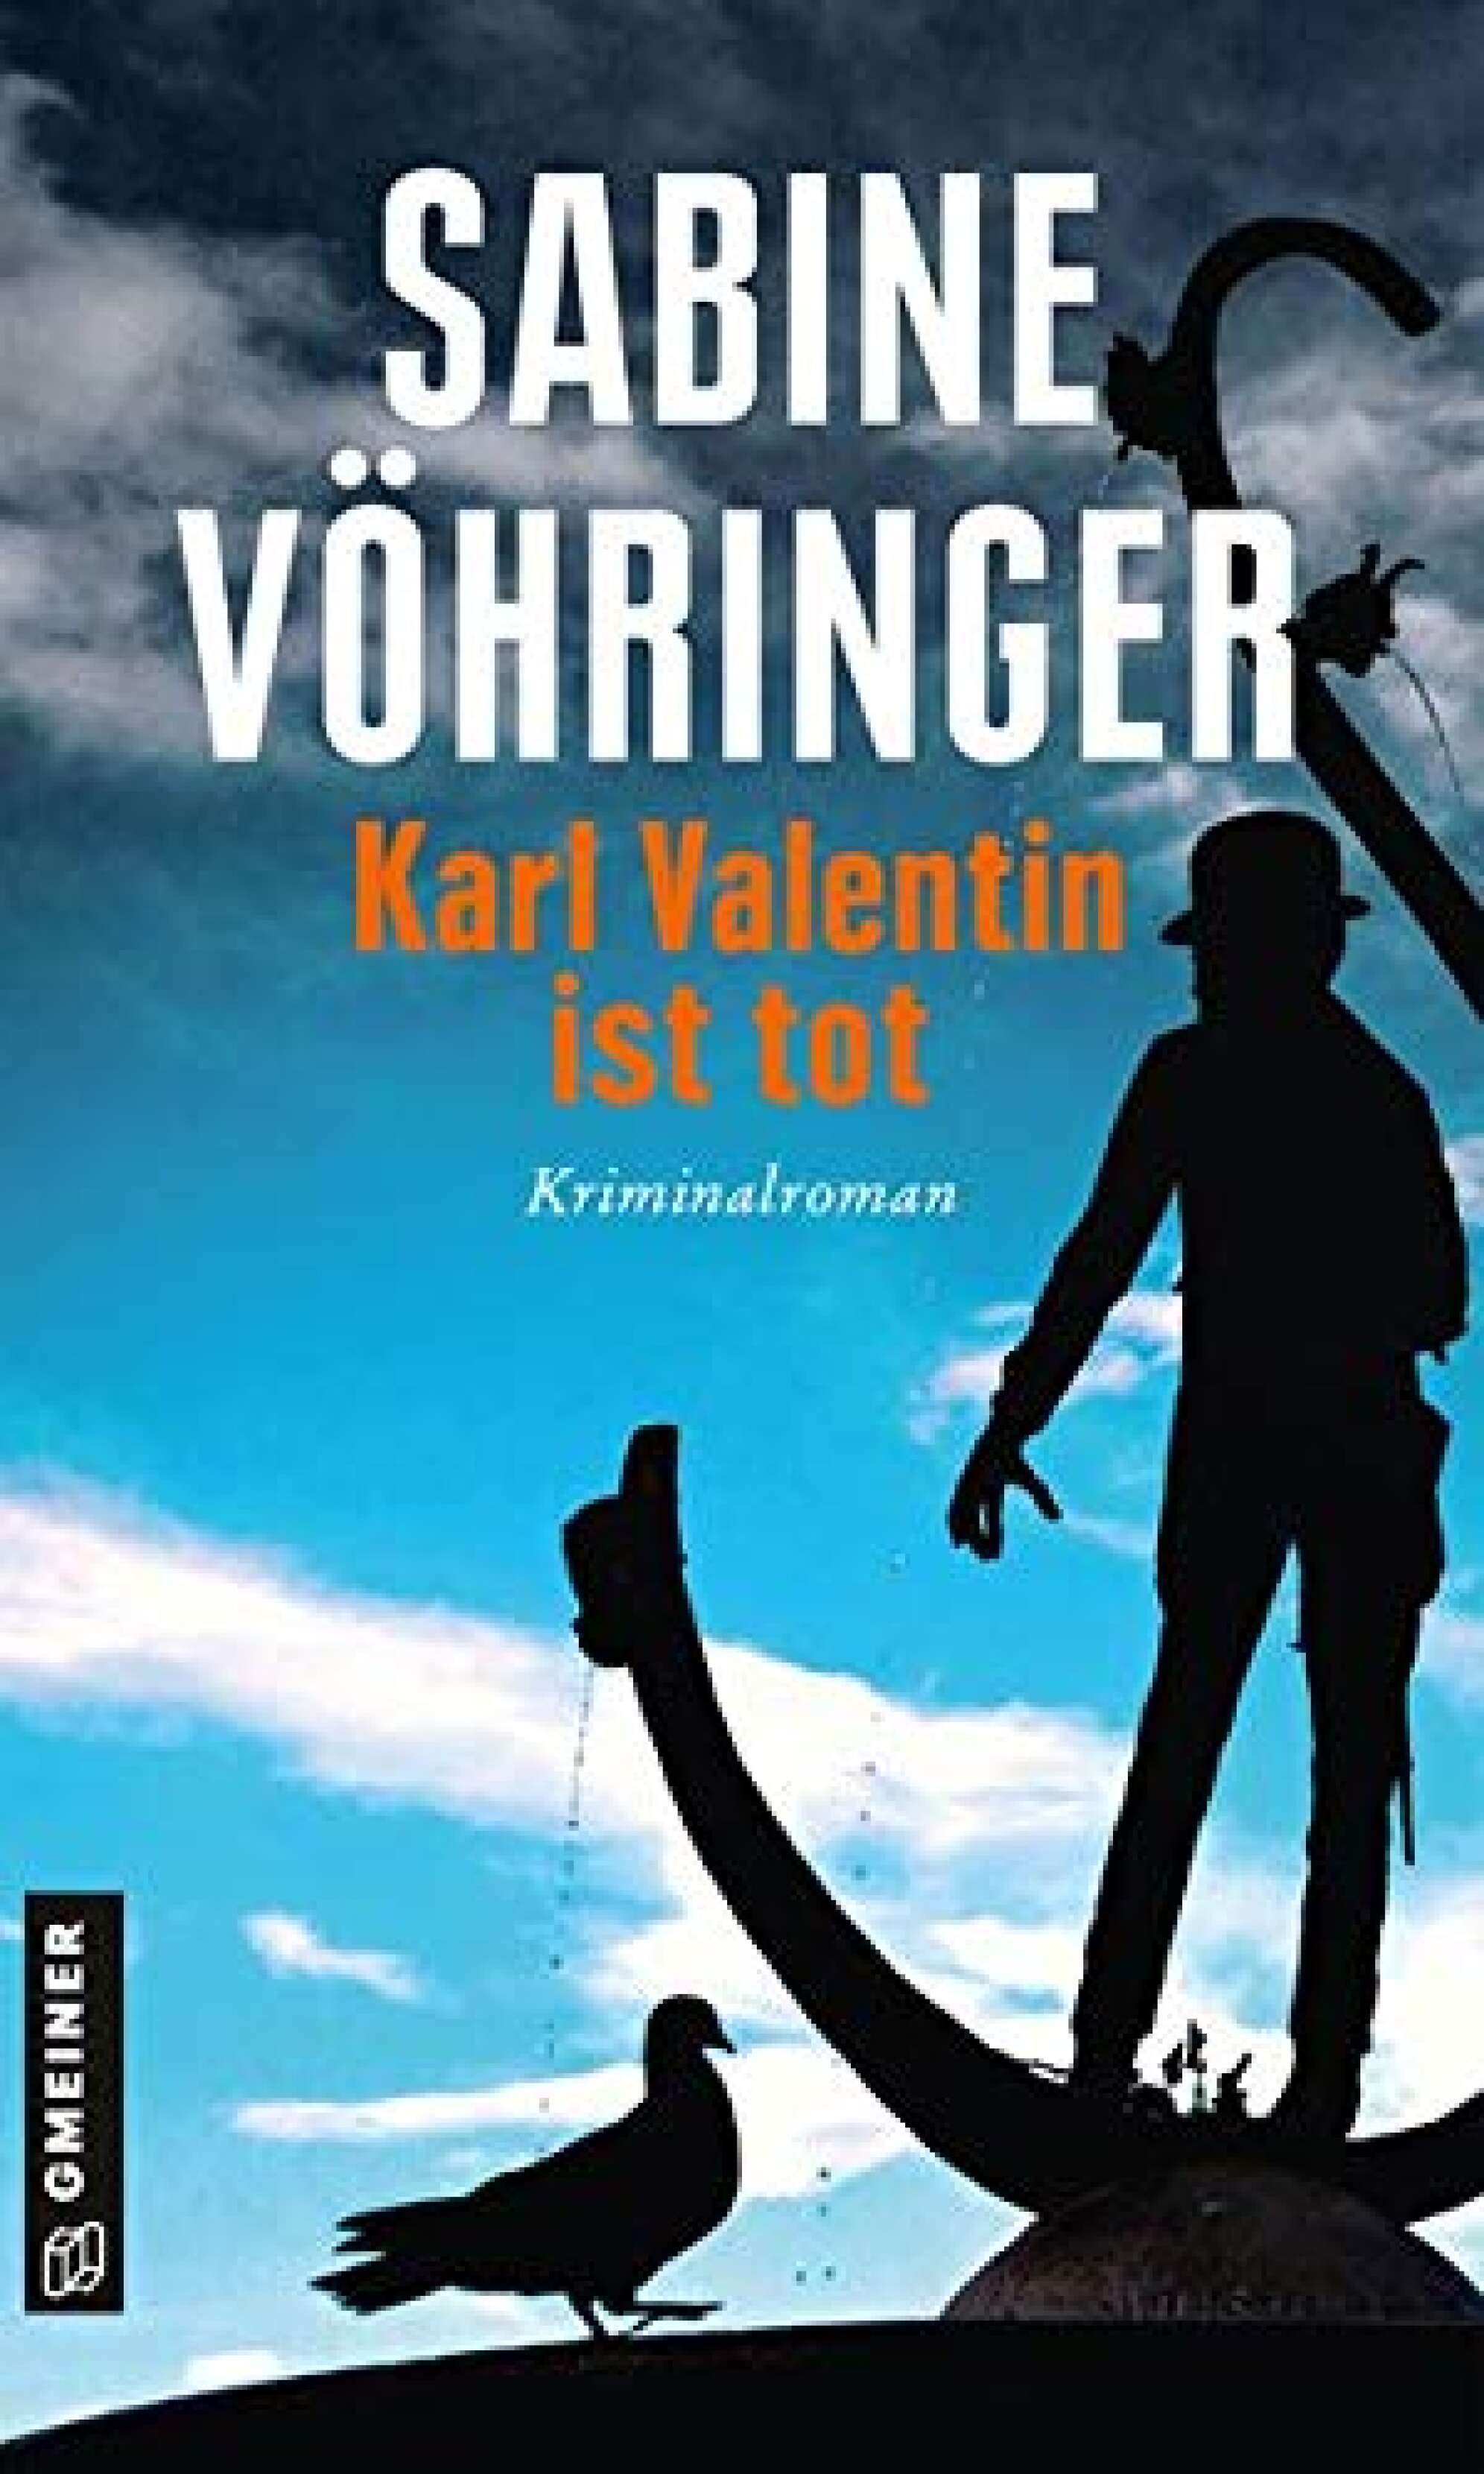 Das Buchcover des Kriminalromans "Karl Valentin ist tot" von Sabine Vöhringer